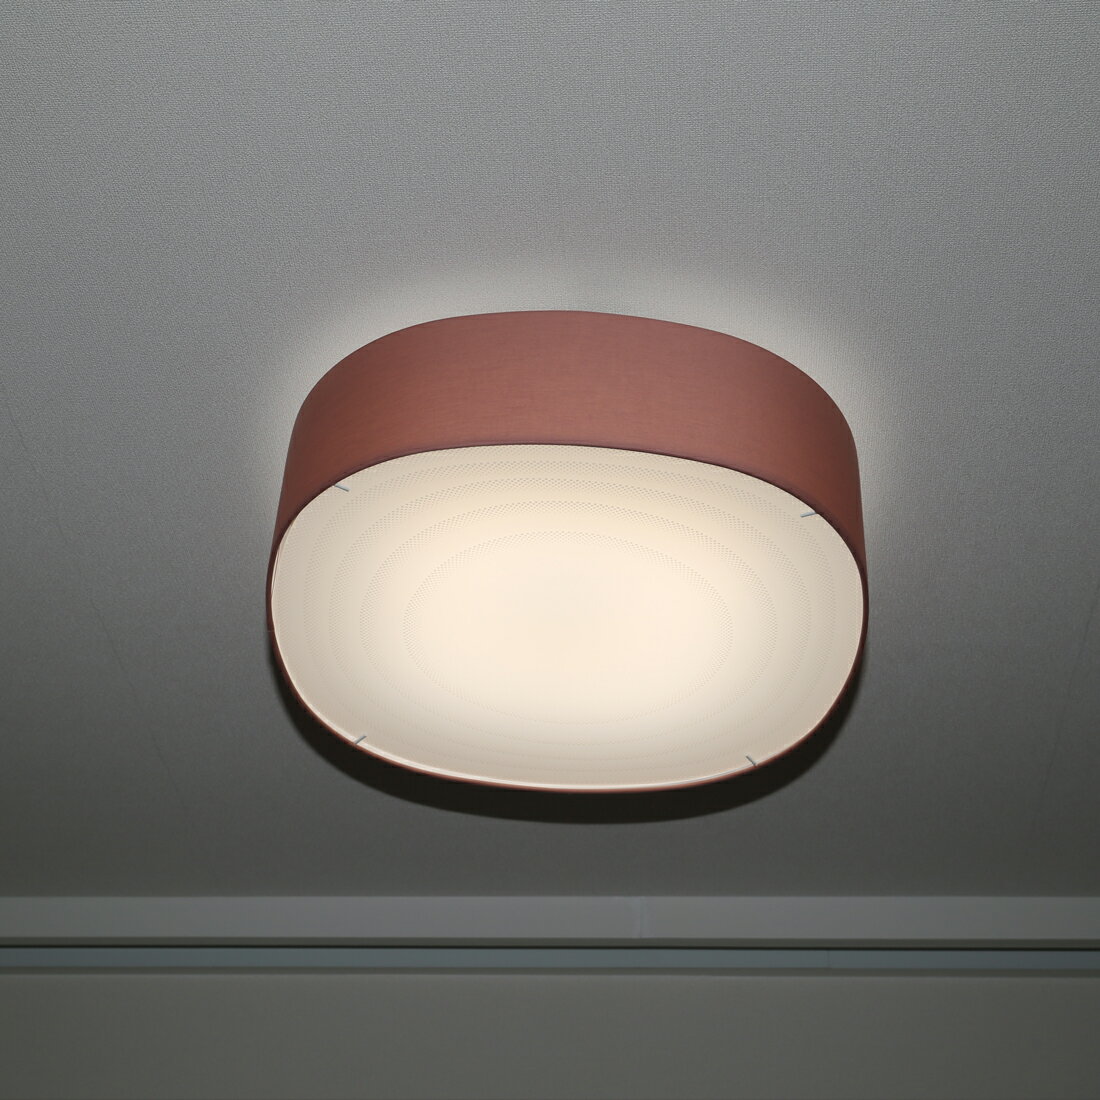 シーリングライト 6畳用 LOG(ログ) LED MCL015電球色 昼光色 7段階調光 リビング おしゃれ 明るい LEDライト リビング 和室 北欧 カフェ風 寝室 天井照明